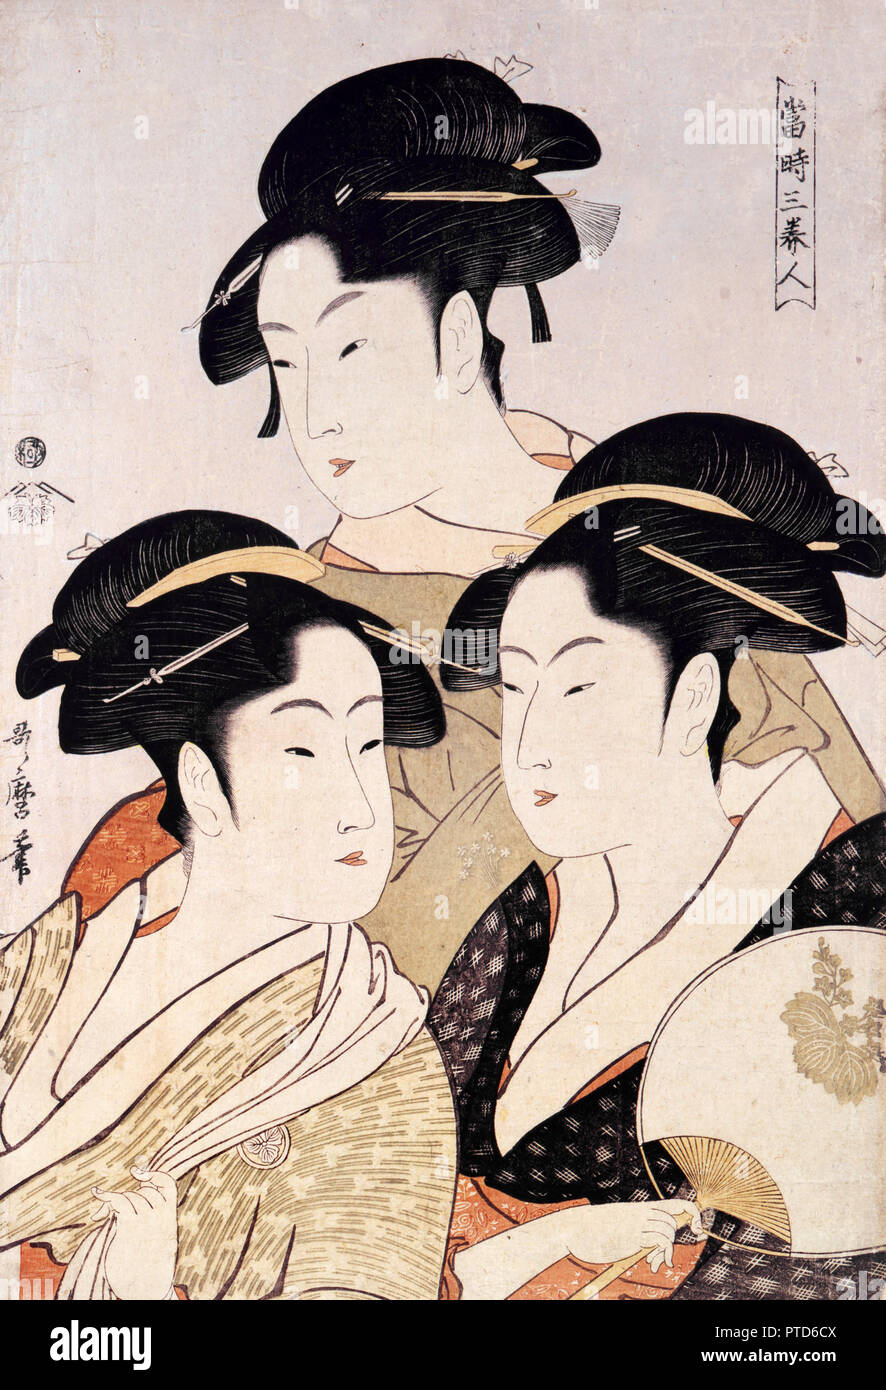 Kitagawa Utamaro, drei Schönheiten der Gegenwart/Bilder von schönen Frauen, Circa 1793, Holzschnitt auf Papier druckt, Toledo Museum of Art, Ohio, USA. Stockfoto